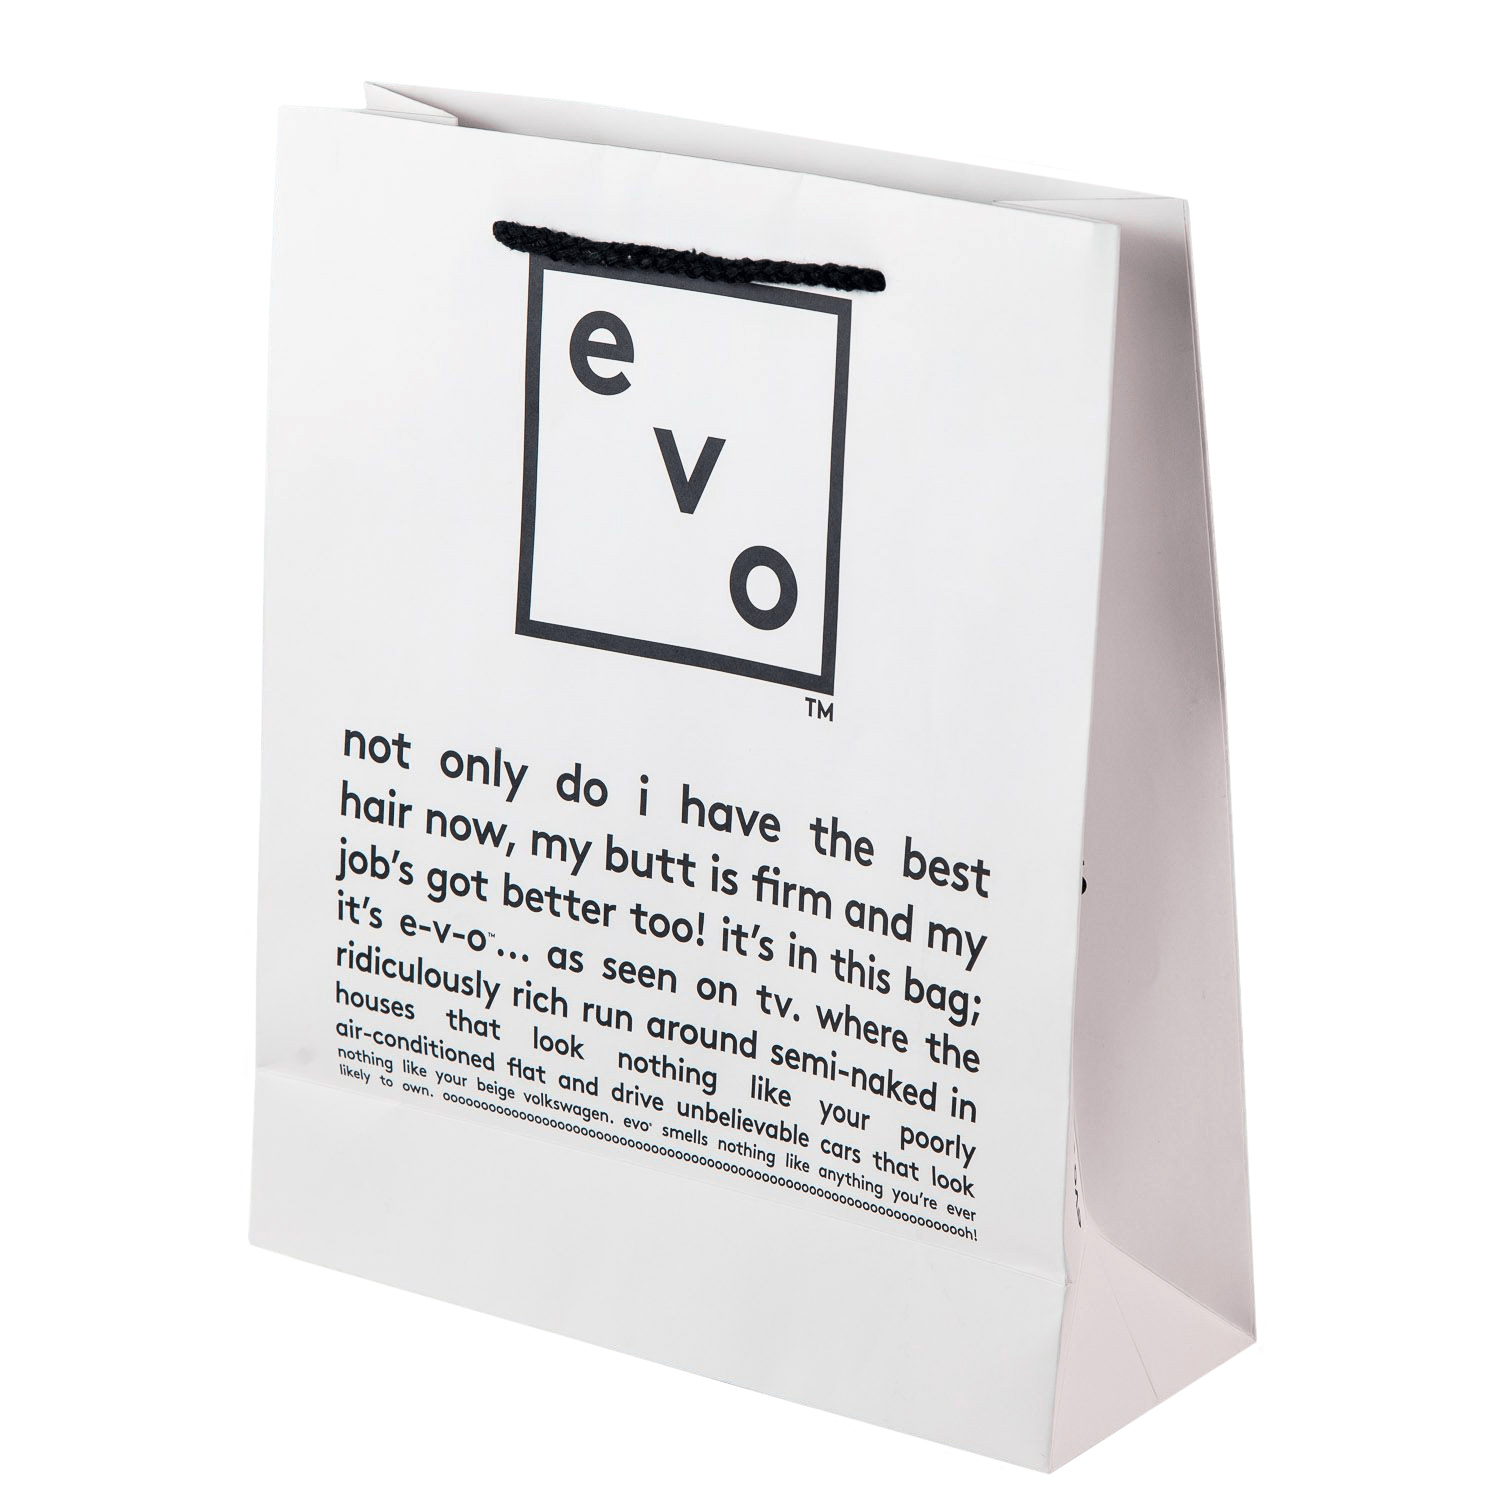 Evo Подарочный пакет Evo (Evo, travel)